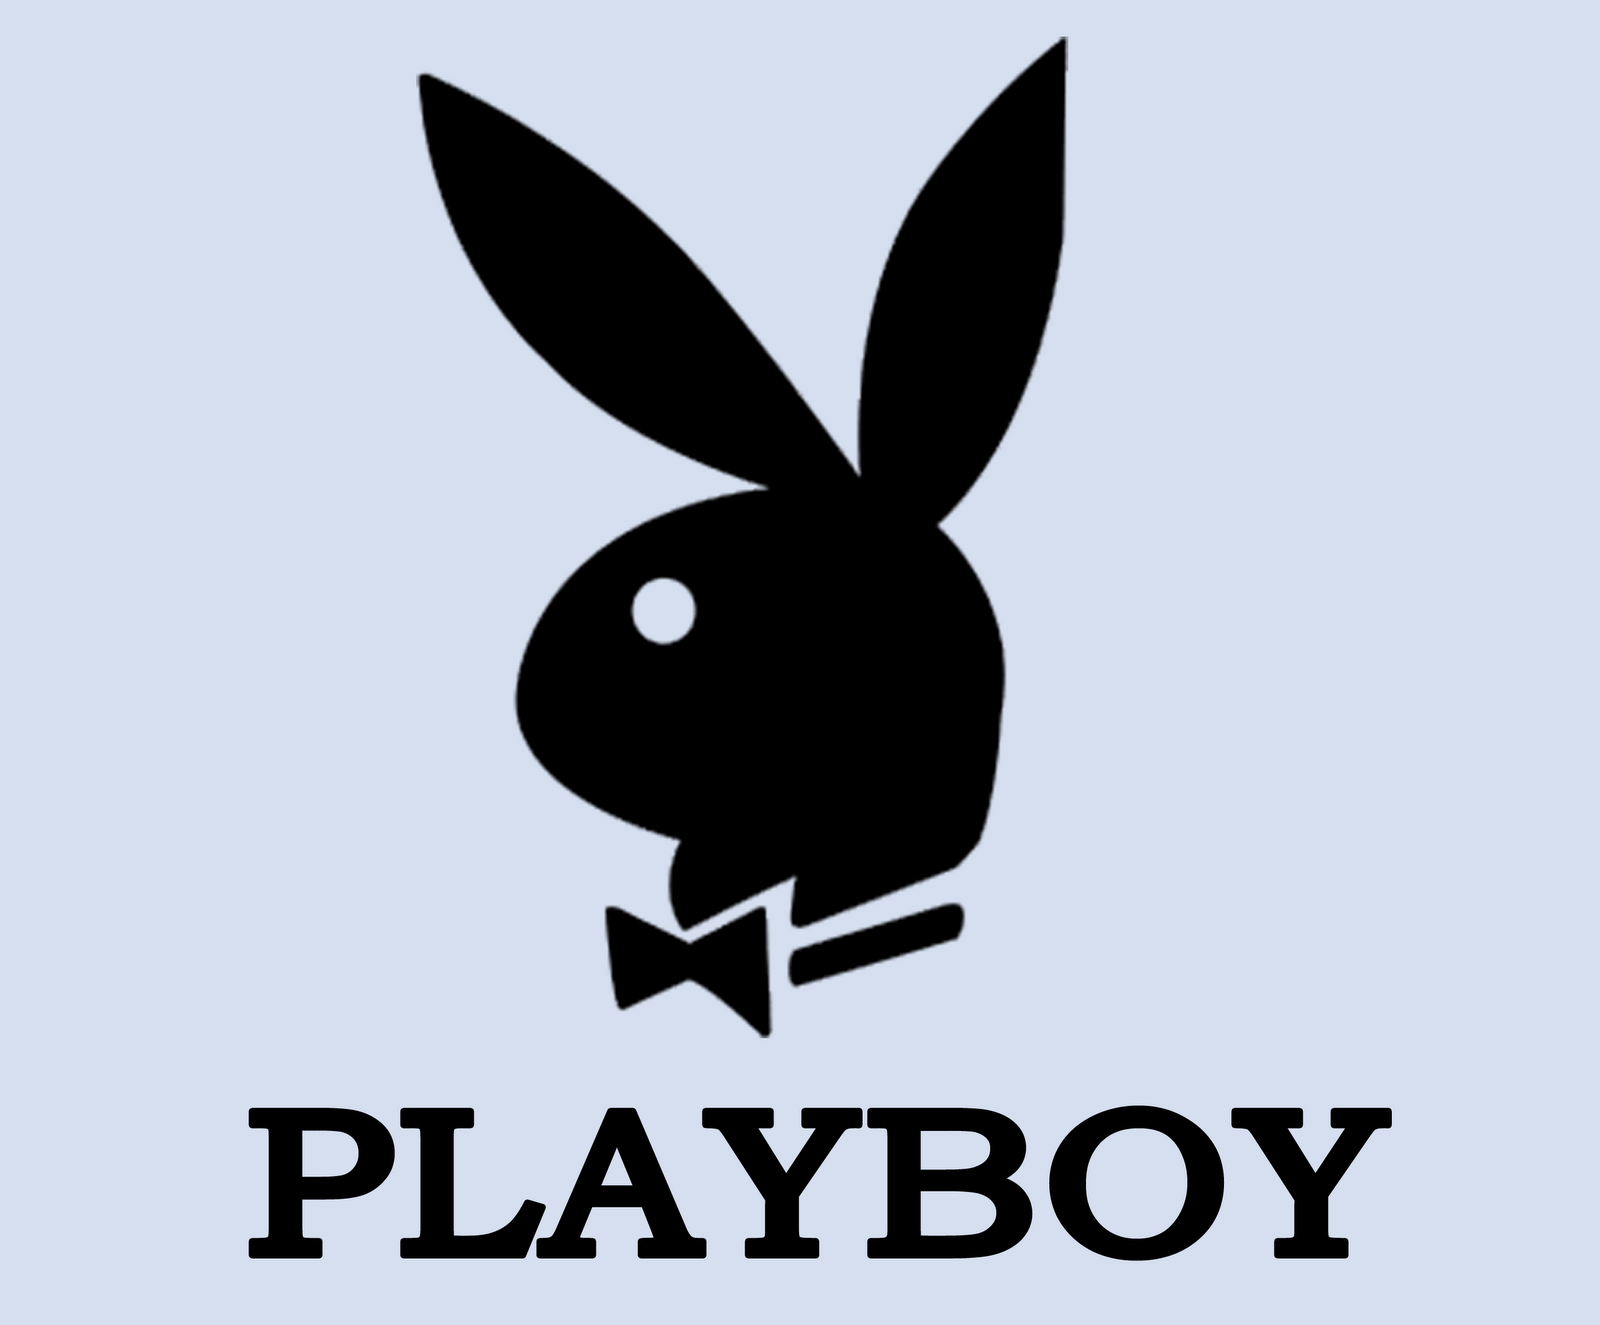 [playboy.gif]